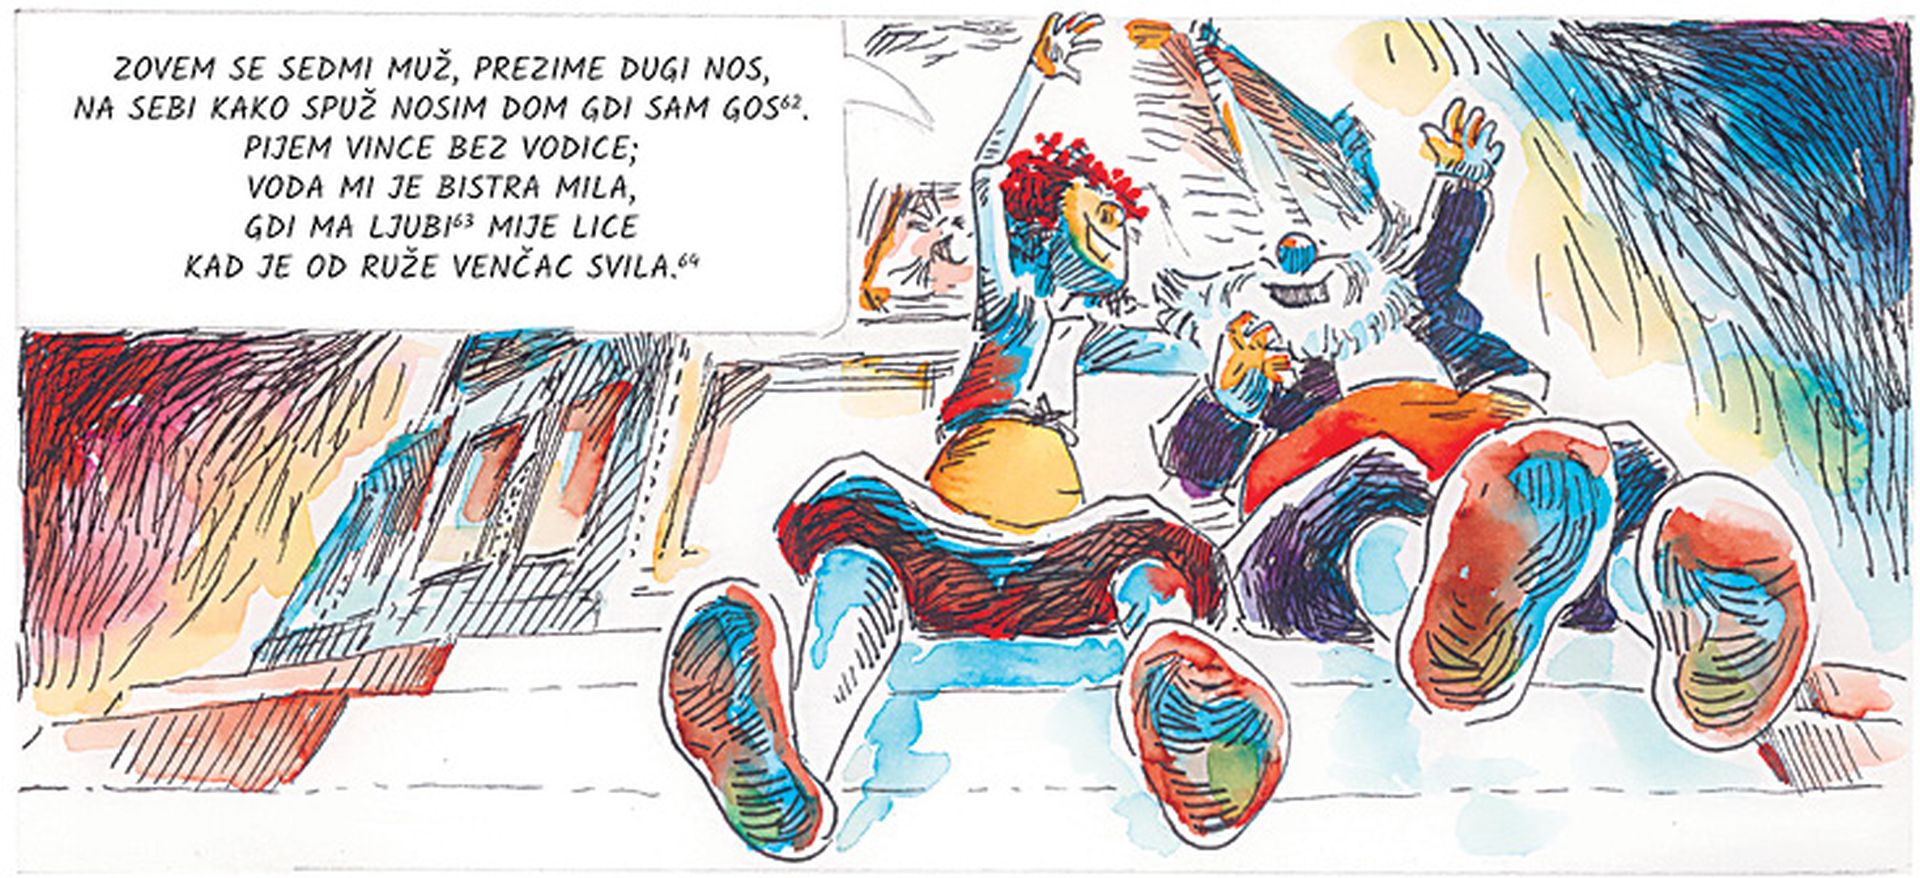 ‘Držićeva ‘Novela od Stanca’ u stripu postat će lektirni hit među školarcima’